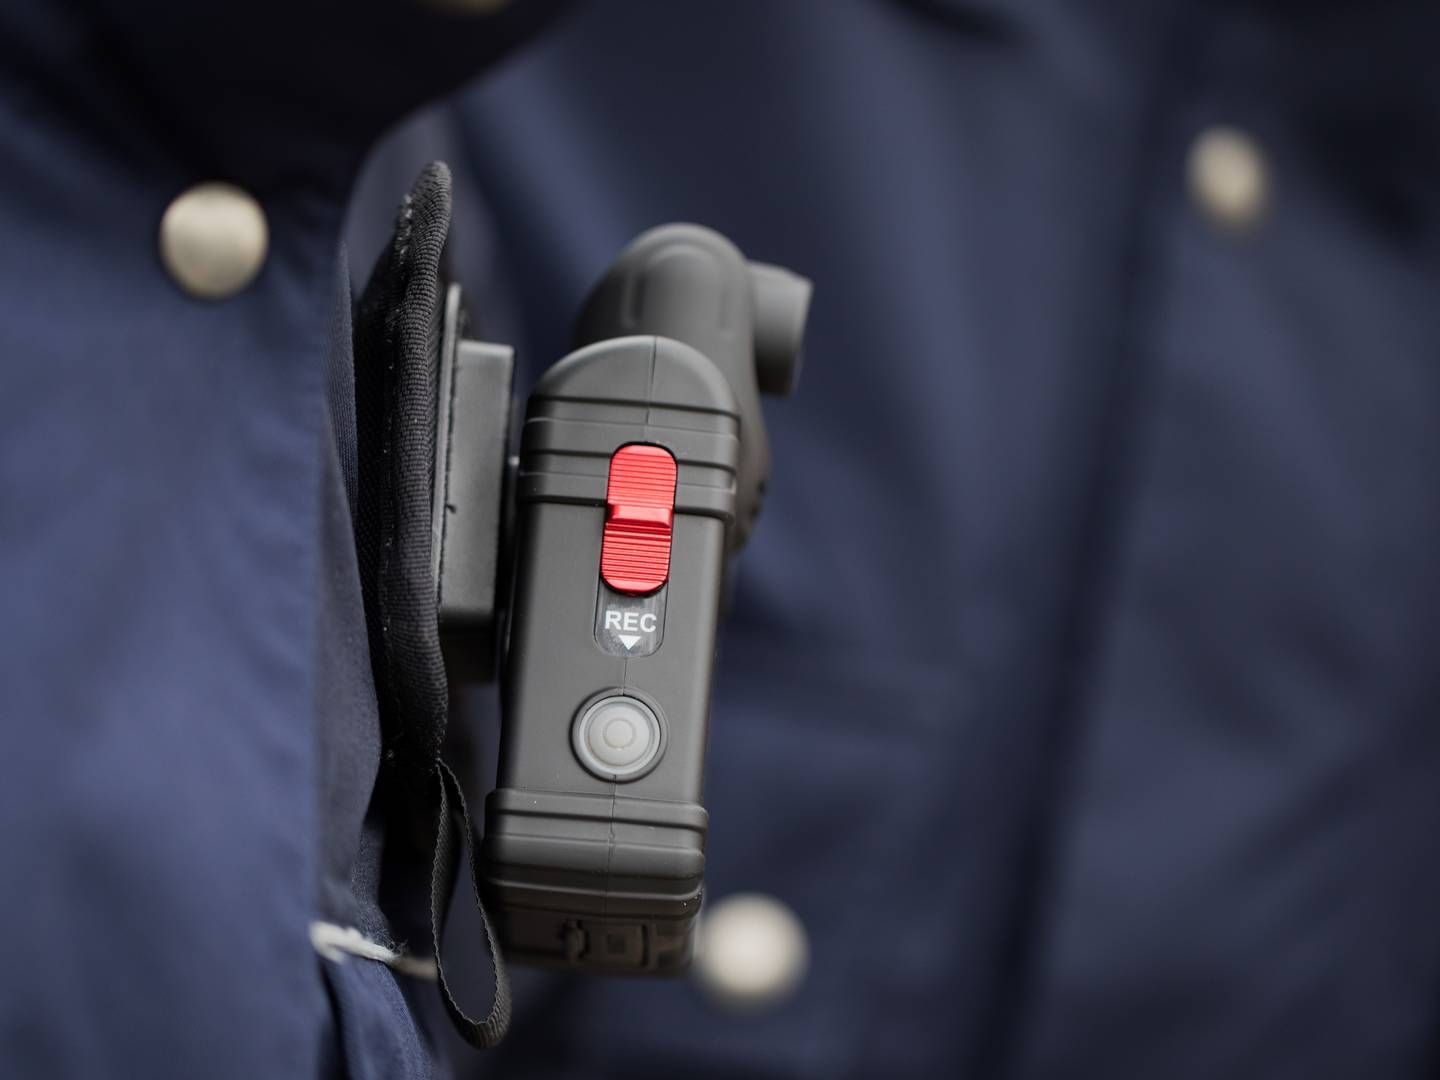 Danskerne er villige til at give mandat til anvendelse af kropskameraer hos politi, fængselspersonale og beredskabspersonale i brand, ambulancer mv. | Foto: Rolf Vennenbernd/AP/Ritzau Scanpix/Arkivfoto